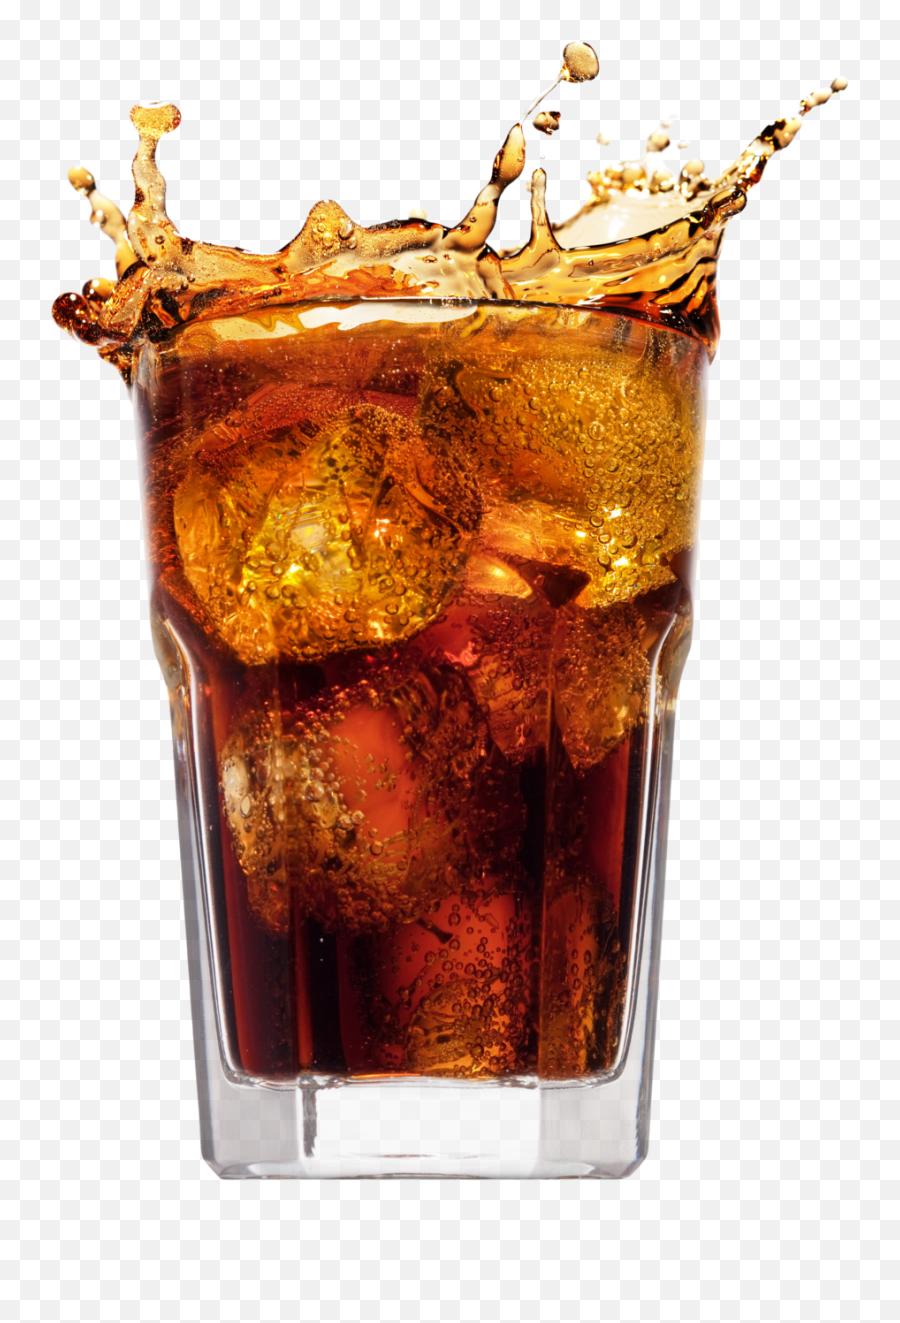 Download Coca - Transparent Background Coke Glass Png Emoji,Coca Cola Png